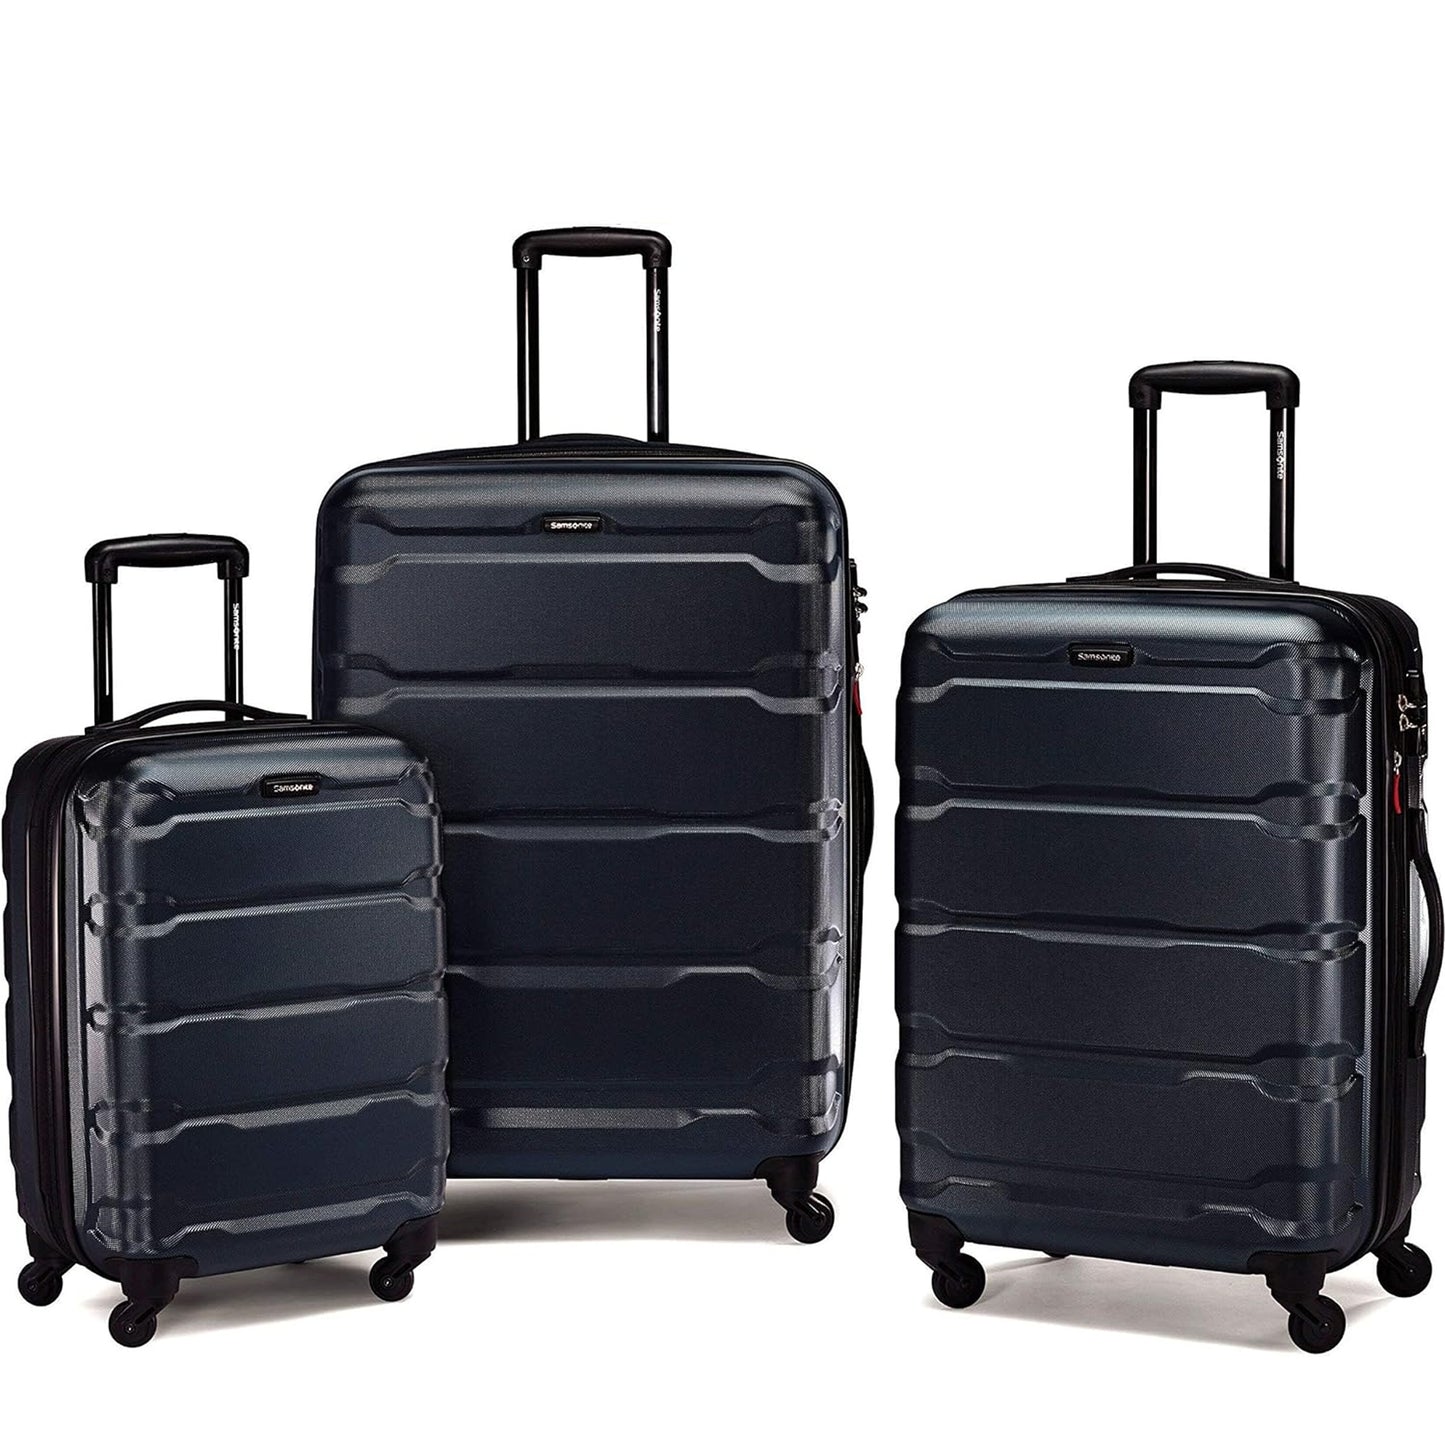 Nefoso 3 Pcs Luggage Sets, Suitcase Hardshell Lightweight, Carry on Luggage with TSA Lock Spinner Wheels